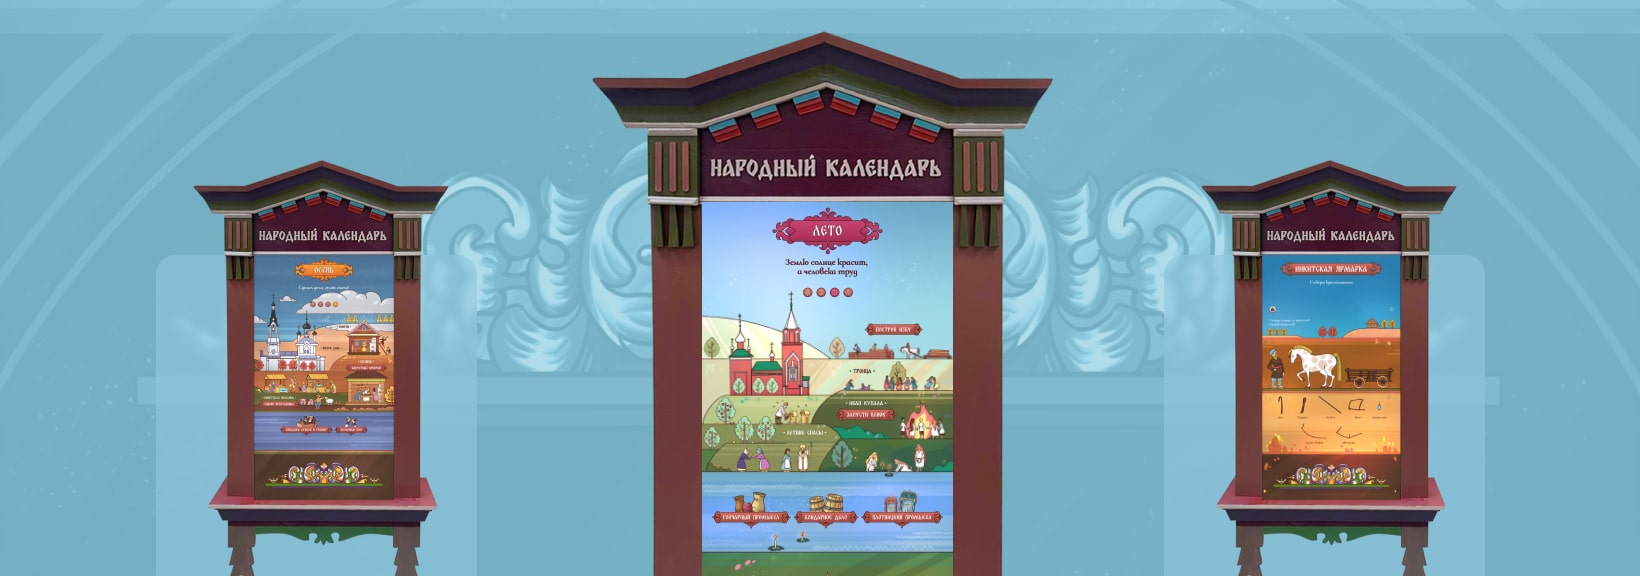 Народный календарь Егорьевского уезда